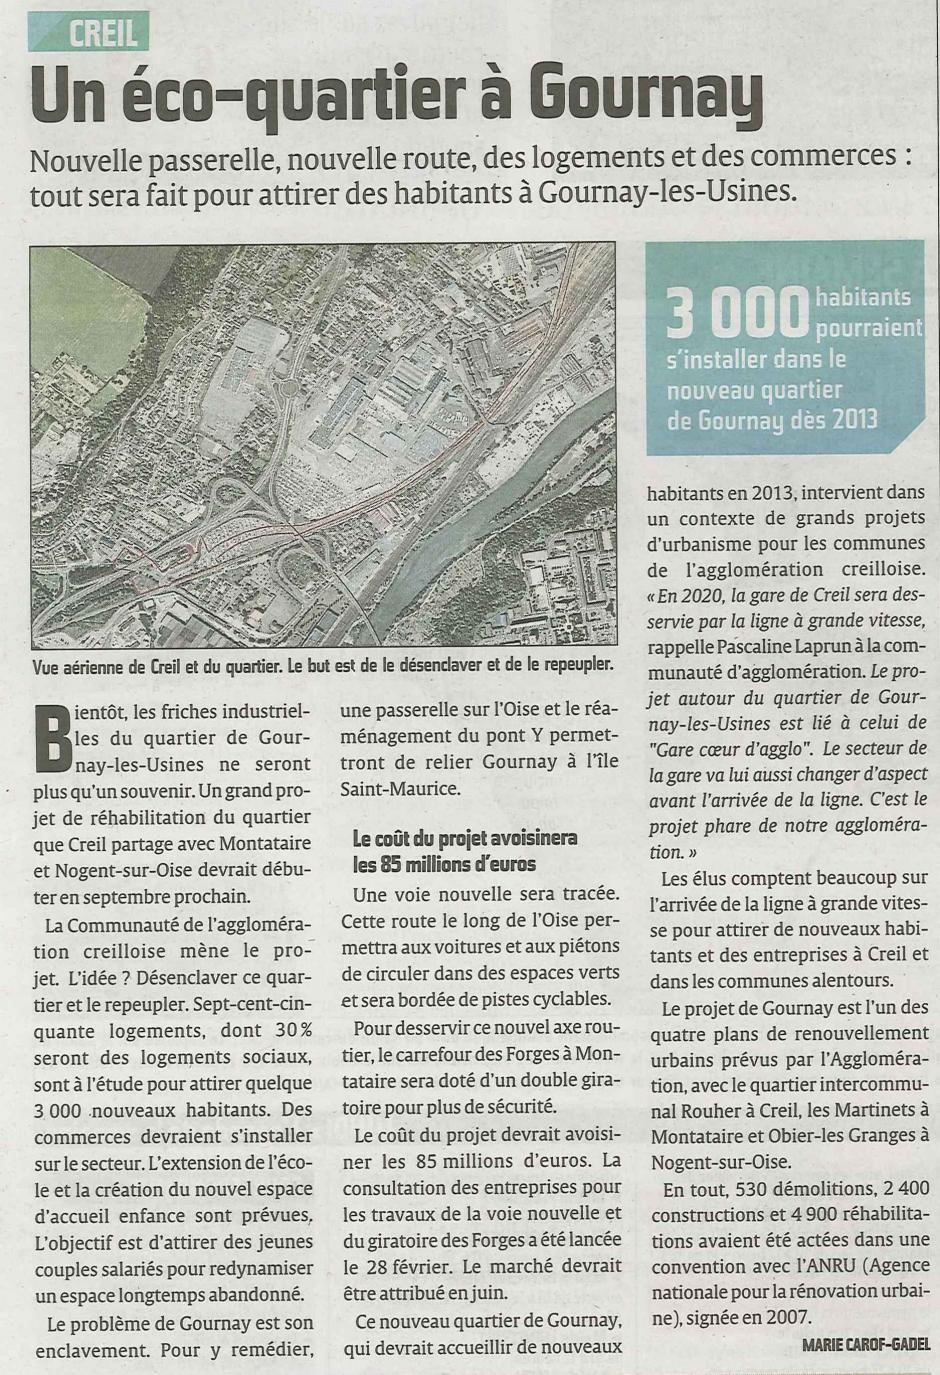 20120303-CP-Bassin creillois-Quatre plans de renouvellement urbain, dont celui du quartier de Gournay